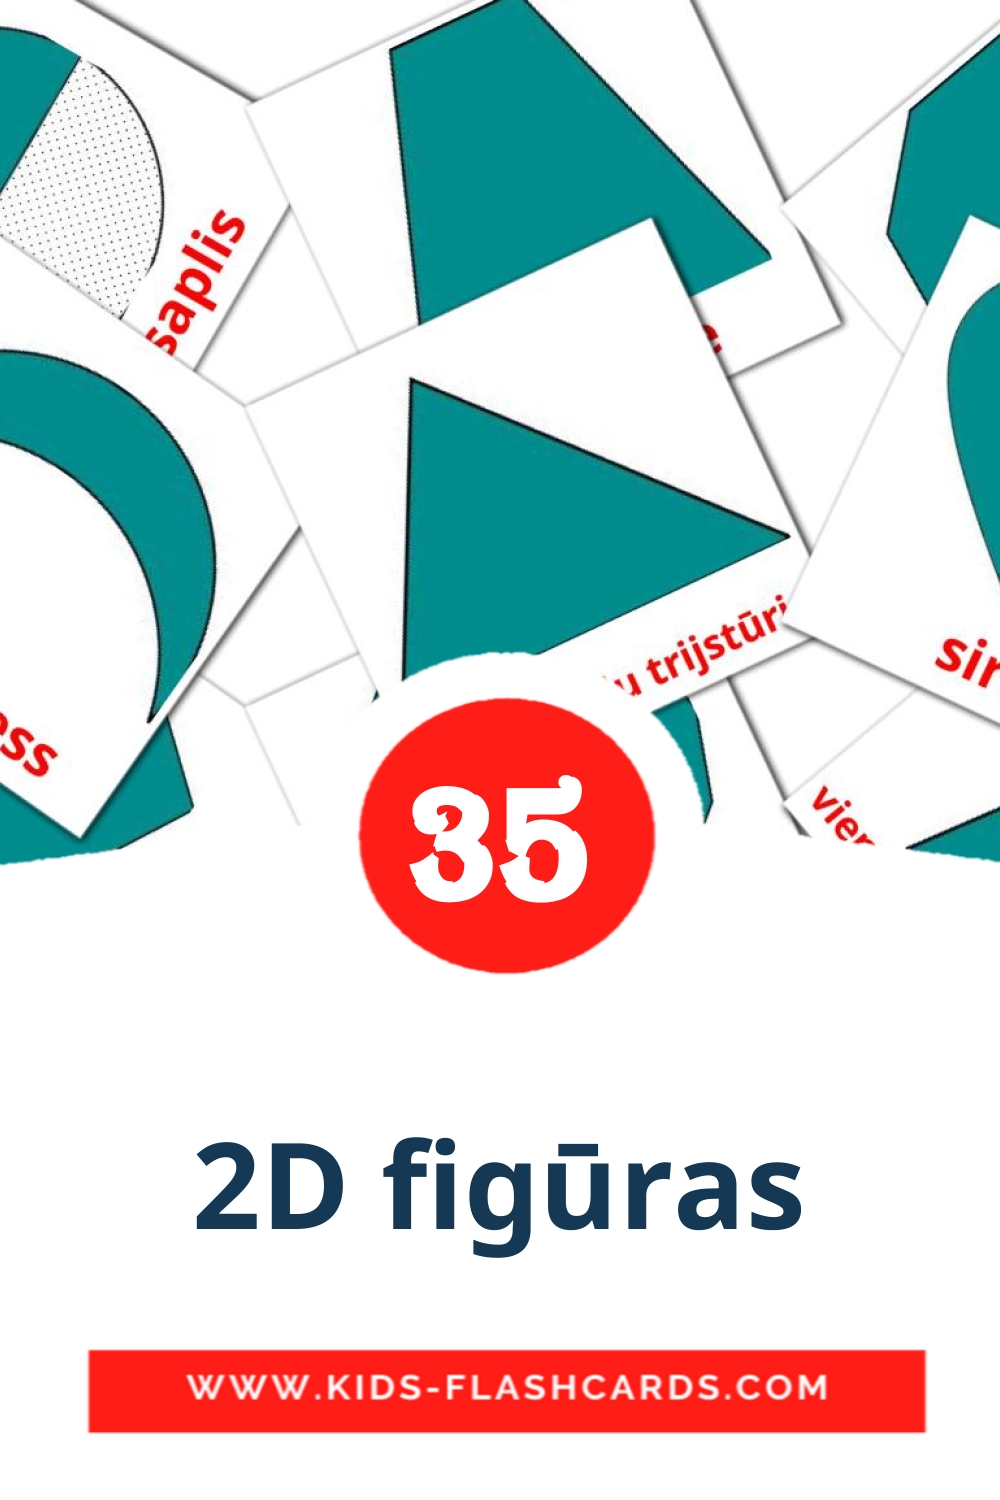 2D figūras на латышском для Детского Сада (35 карточек)